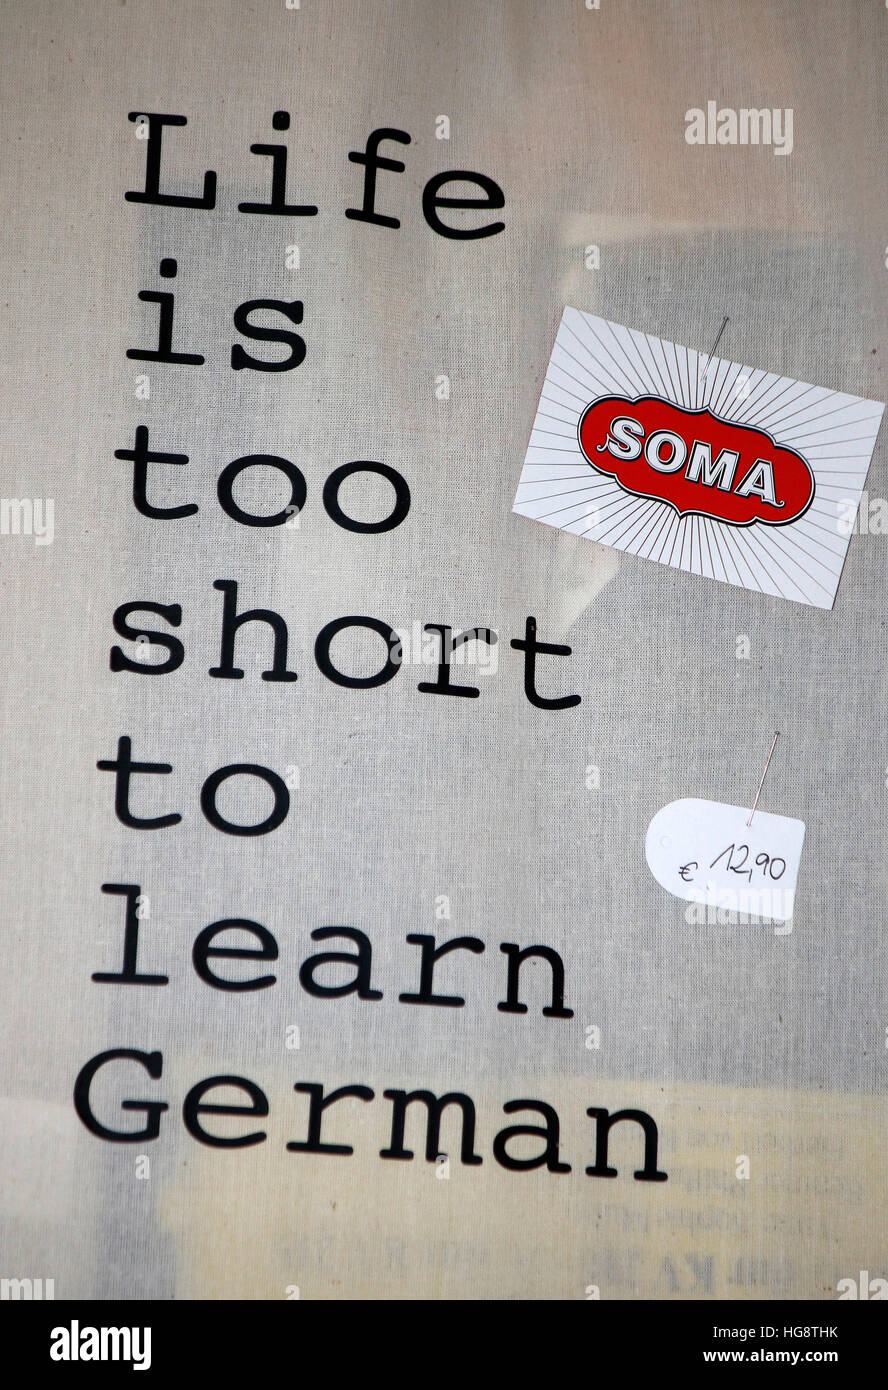 Plakat Mit Dem Slogan "Das Leben ist zu kurz, um Deutsch zu lernen", Das Logo der Marke "Soma", Berlin. Stockfoto